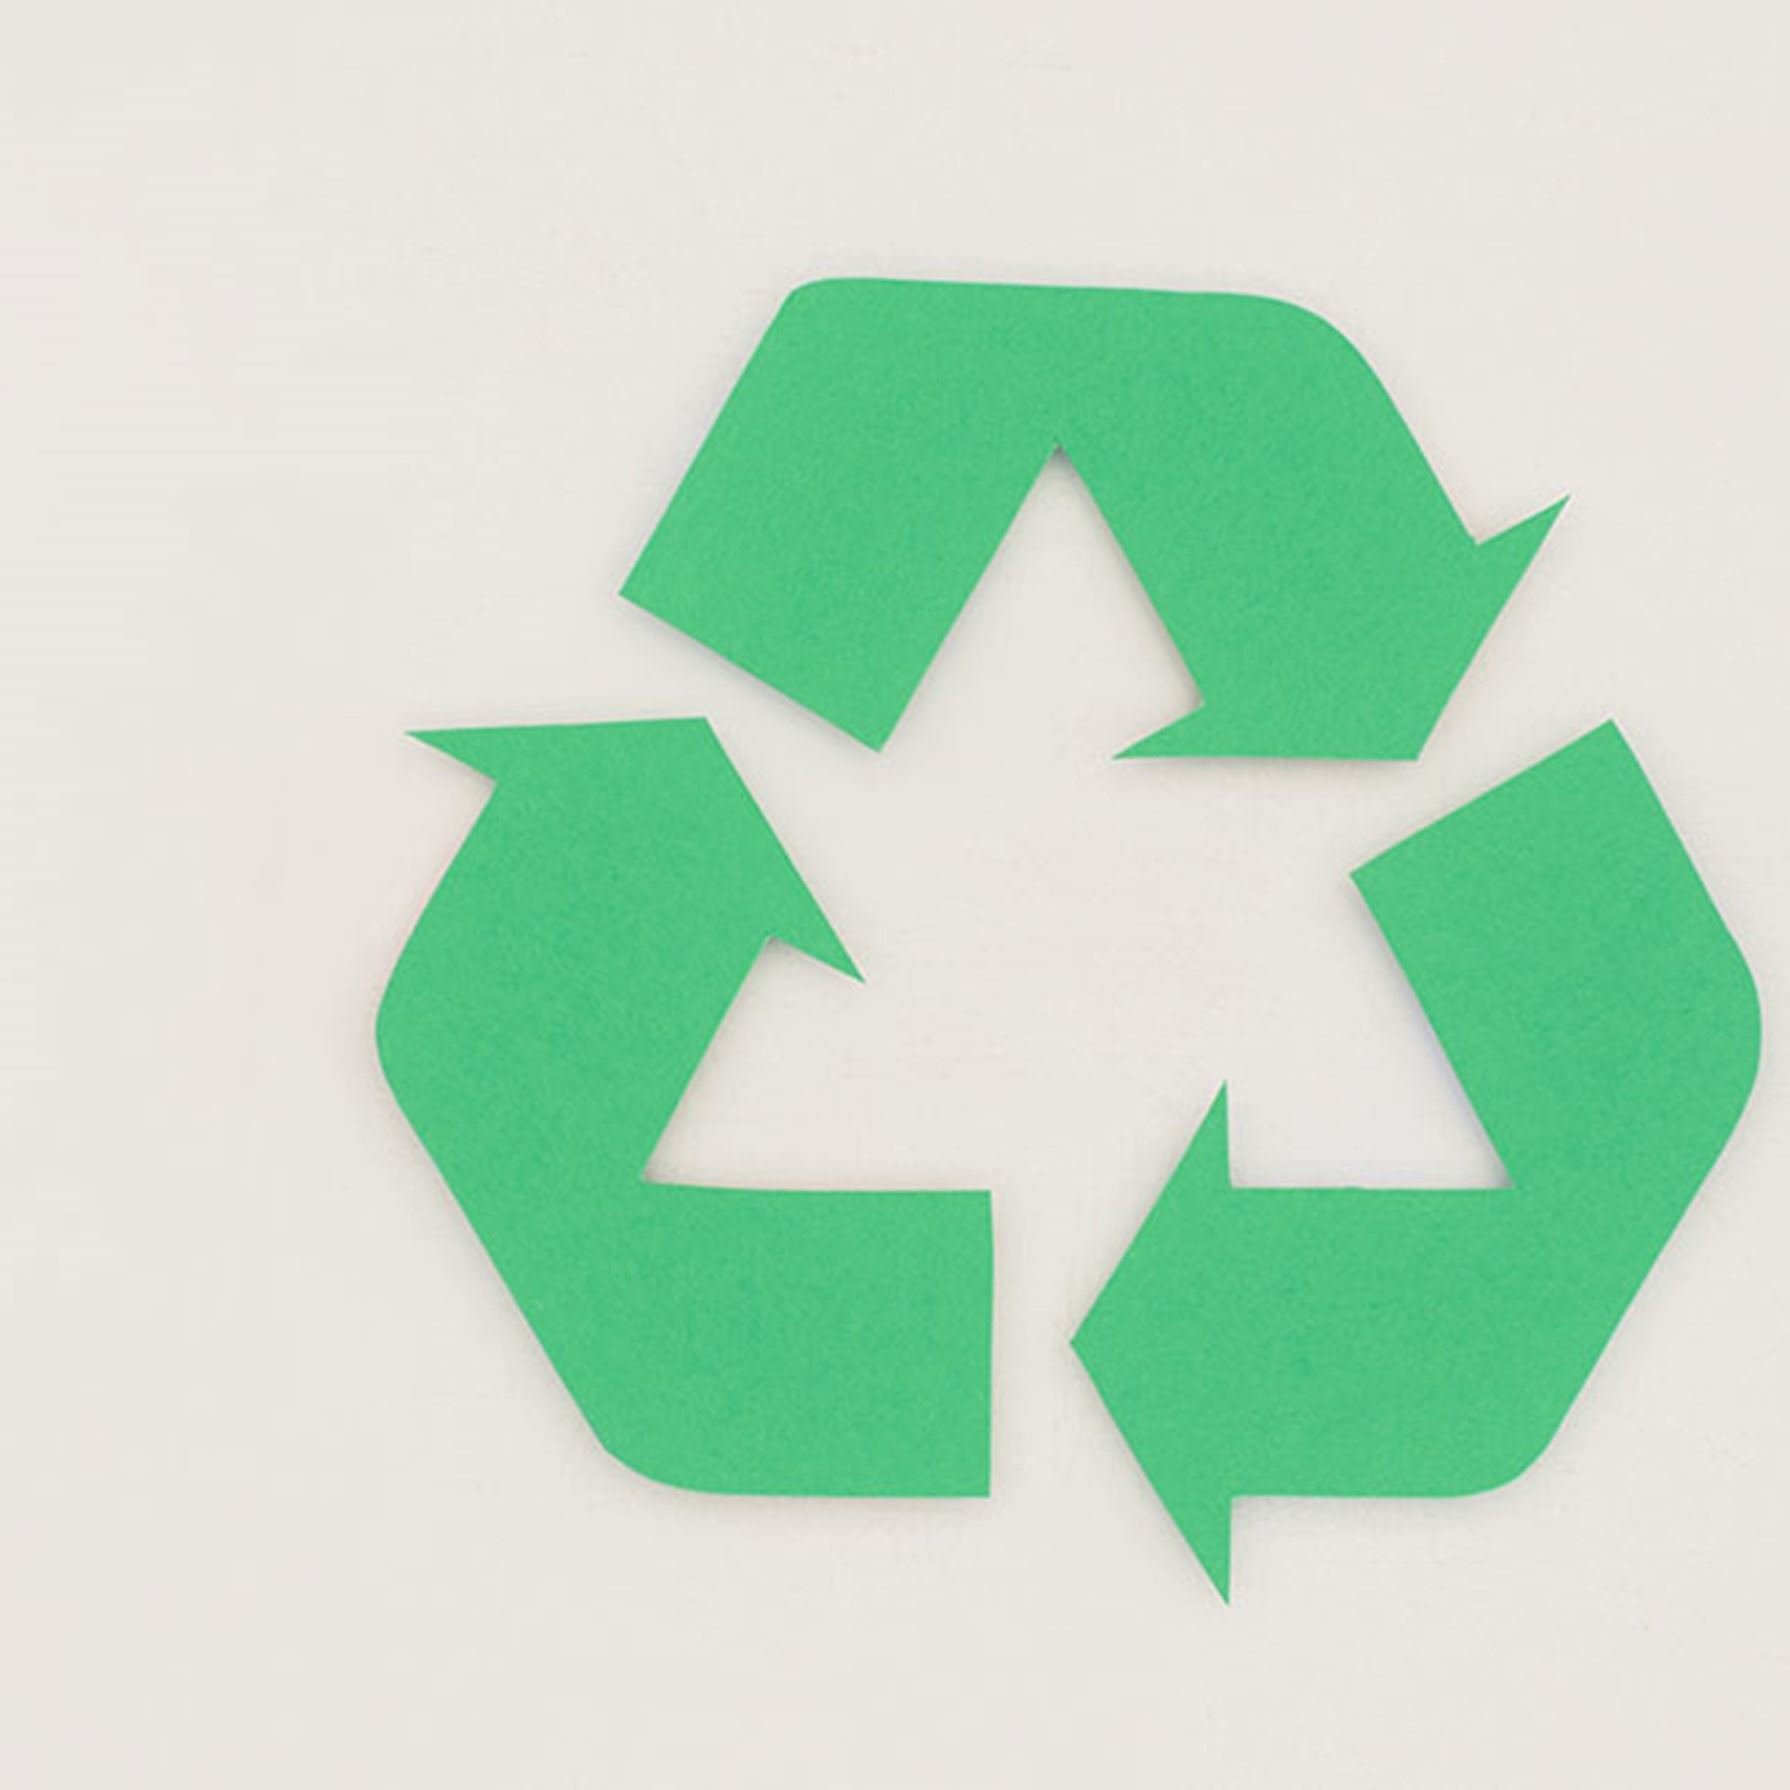 reciclaje-productos